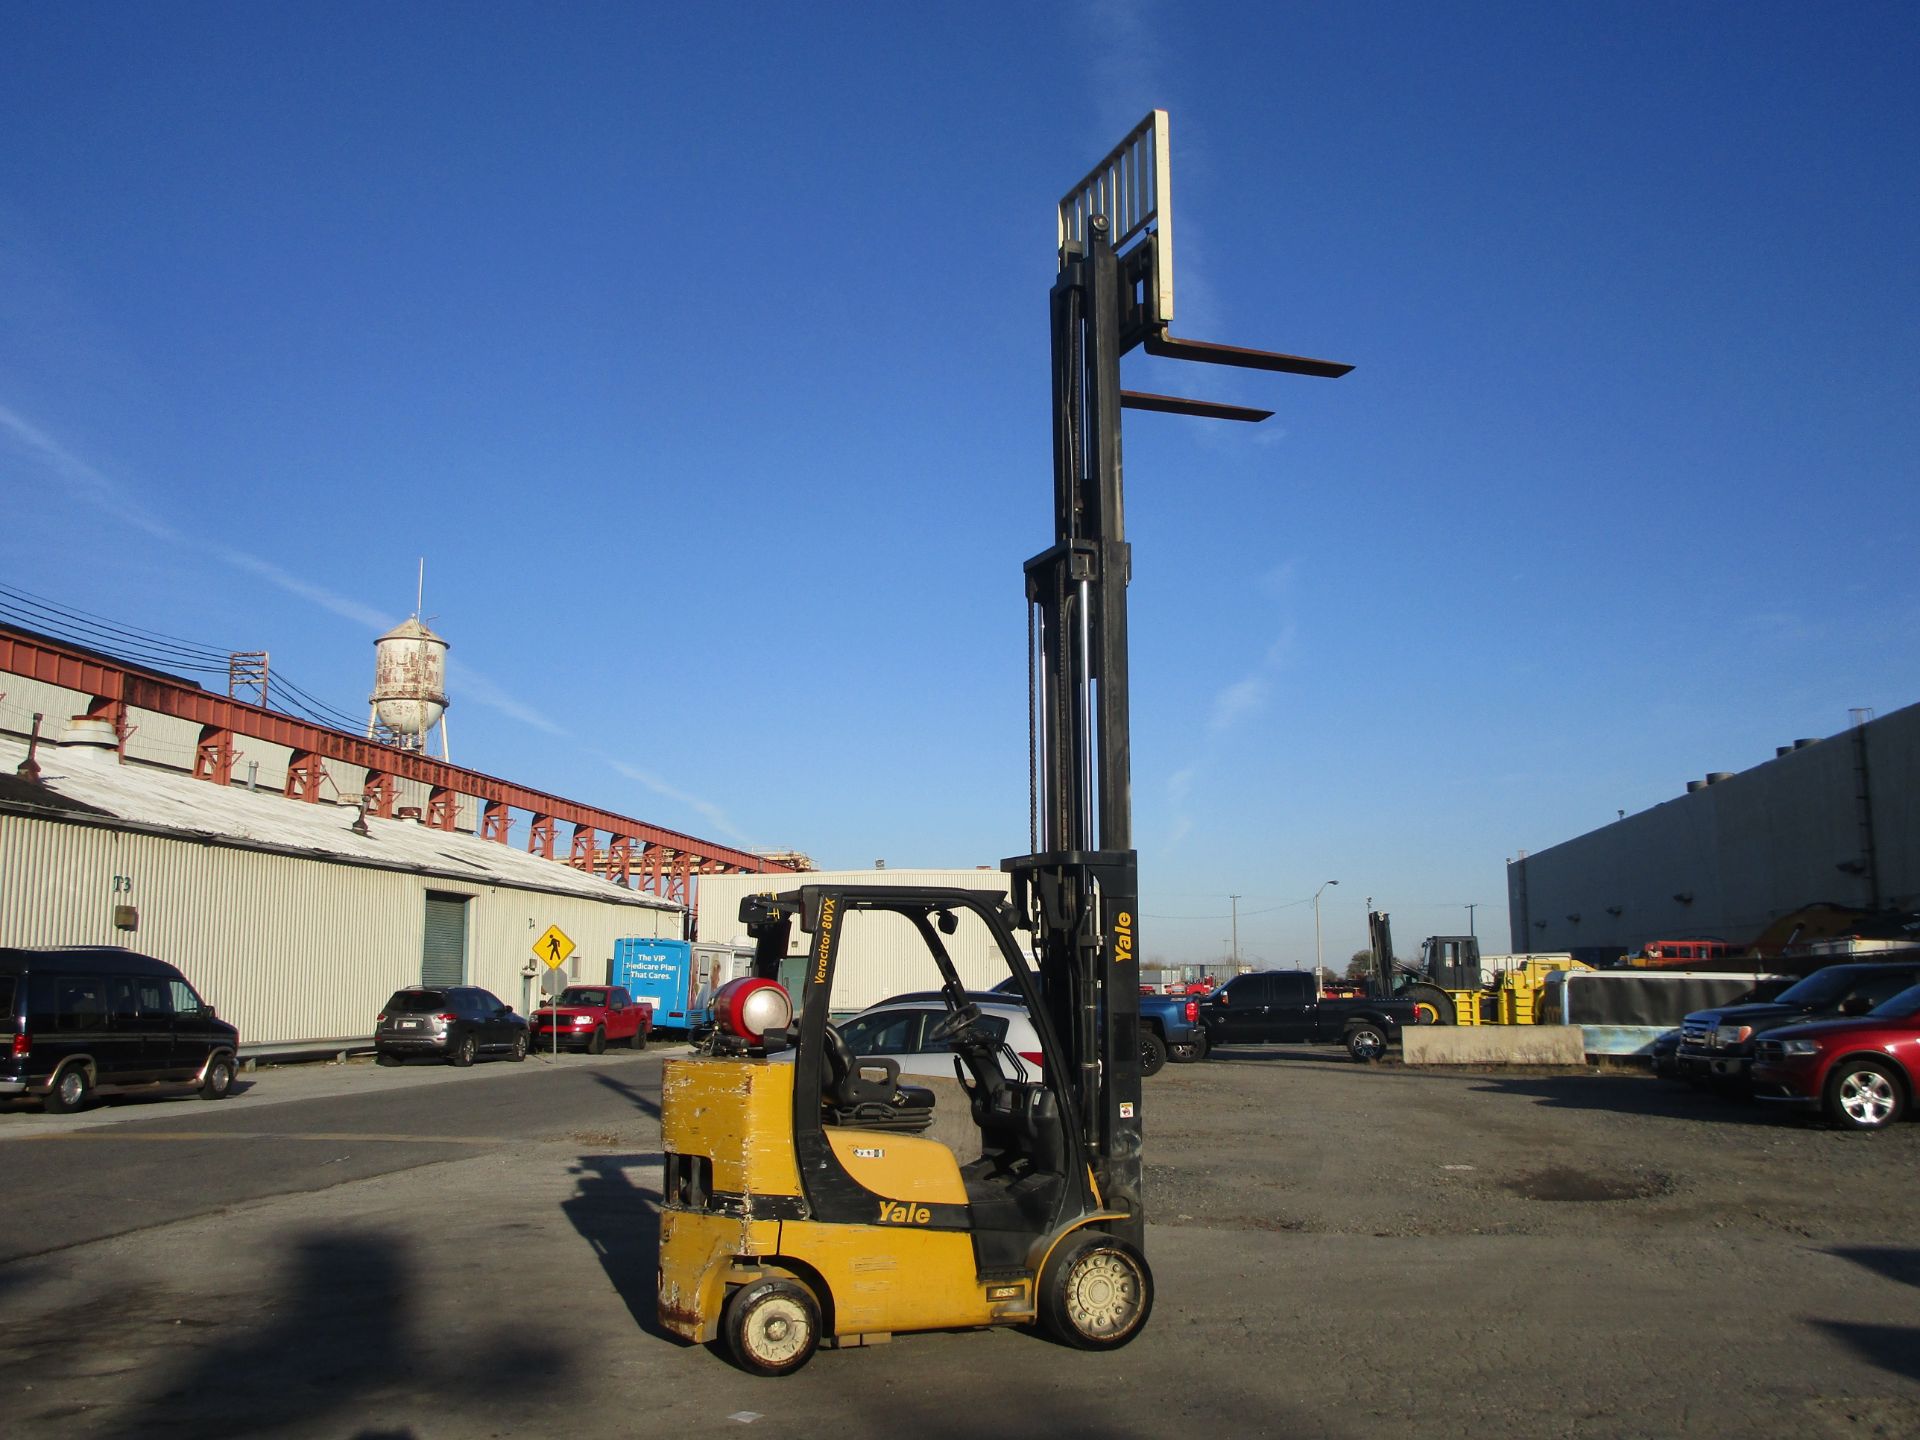 2015 Yale GLC080VX Forklift - Image 12 of 17